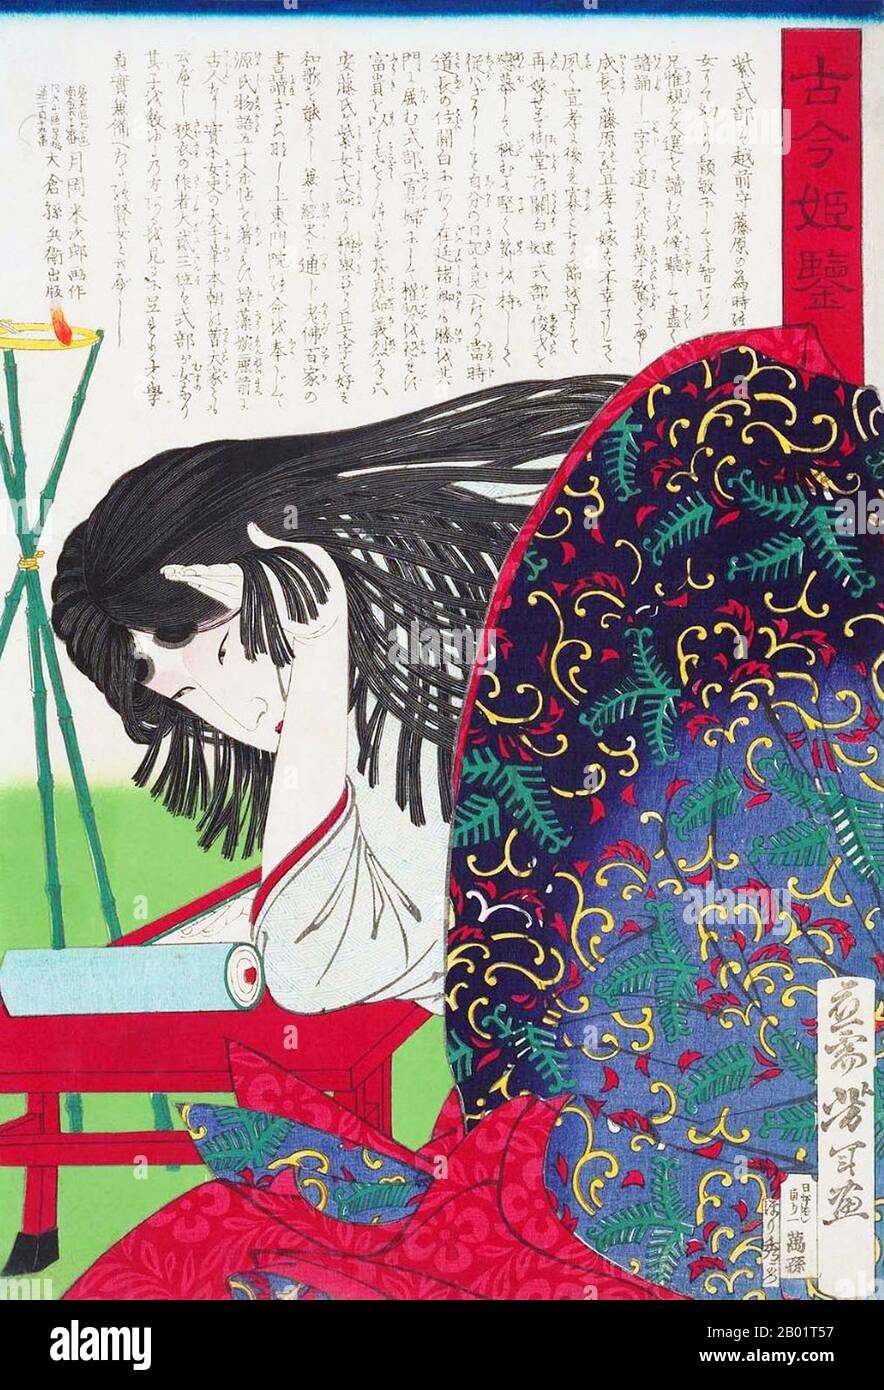 Japan: Lady Murasaki Shikibu (ca. 973–1025), Dichterin und Schriftstellerin. Ukiyo-e Holzschnitt aus der Serie „Spiegel der Frauen, Antiker und Moderne“ von Tsukioka Yoshitoshi (30. April 1839 bis 9. Juni 1892), um 1876. Murasaki Shikibu war eine japanische Schriftstellerin, Dichterin und Hofdame während der Heian-Zeit. Sie ist bekannt als die Autorin der Geschichte von Genji, die zwischen 1000 und 1012 auf Japanisch geschrieben wurde. Murasaki Shikibu ist ein Spitzname; ihr richtiger Name ist unbekannt, aber sie könnte Fujiwara Takako gewesen sein, die 1007 in einem Tagebuch des Hofes als kaiserliche Dame in Warten erwähnt wurde. Stockfoto